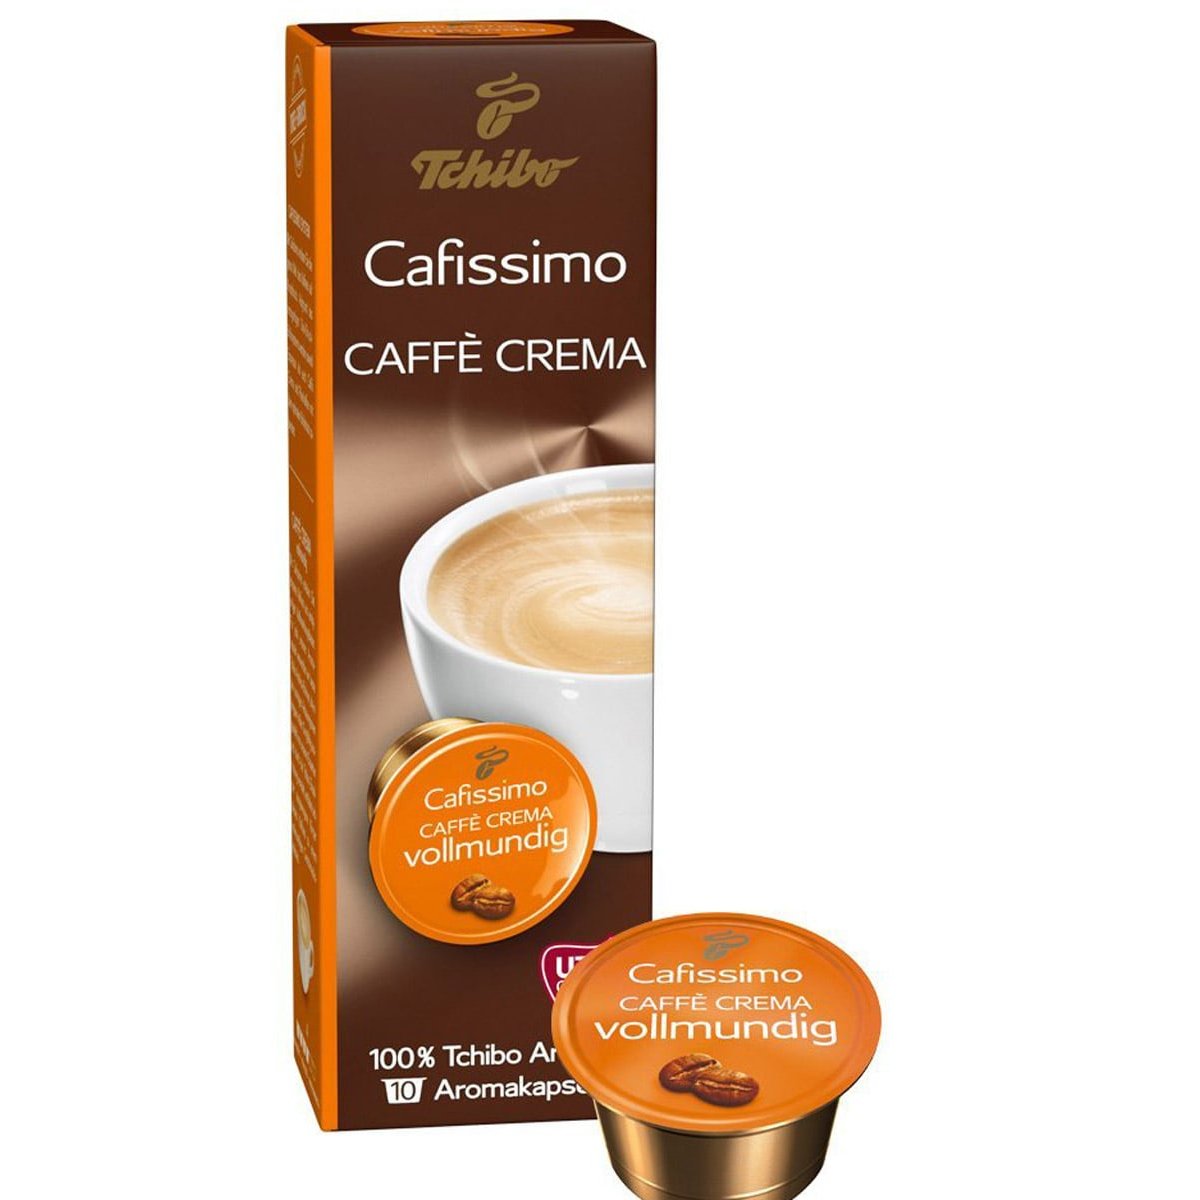 Tchibo Cafissimo Caffé Crema Vollmundig